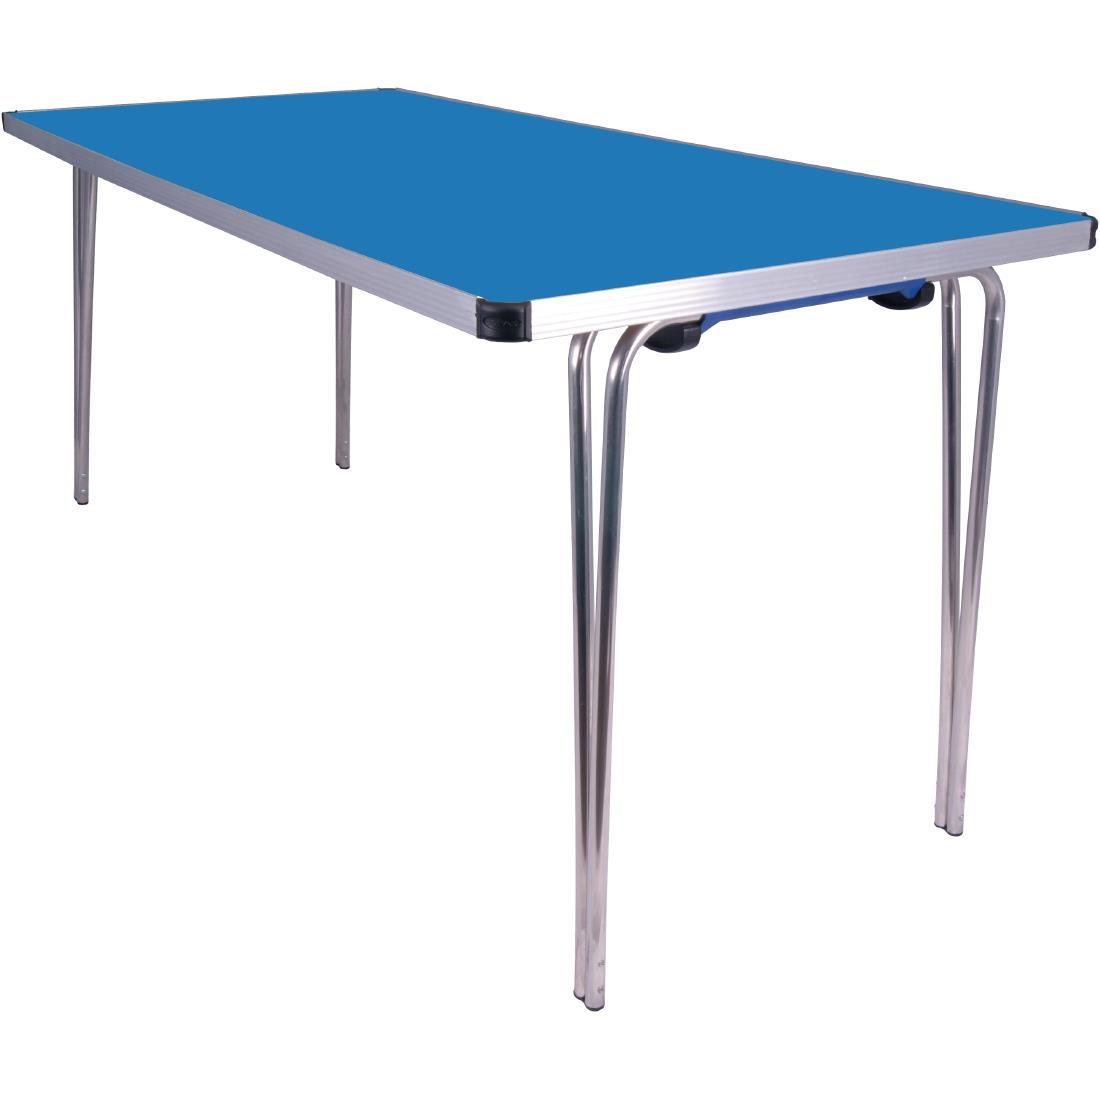 Gopak Contour Folding Table Blue 5ft - DM607  - 1